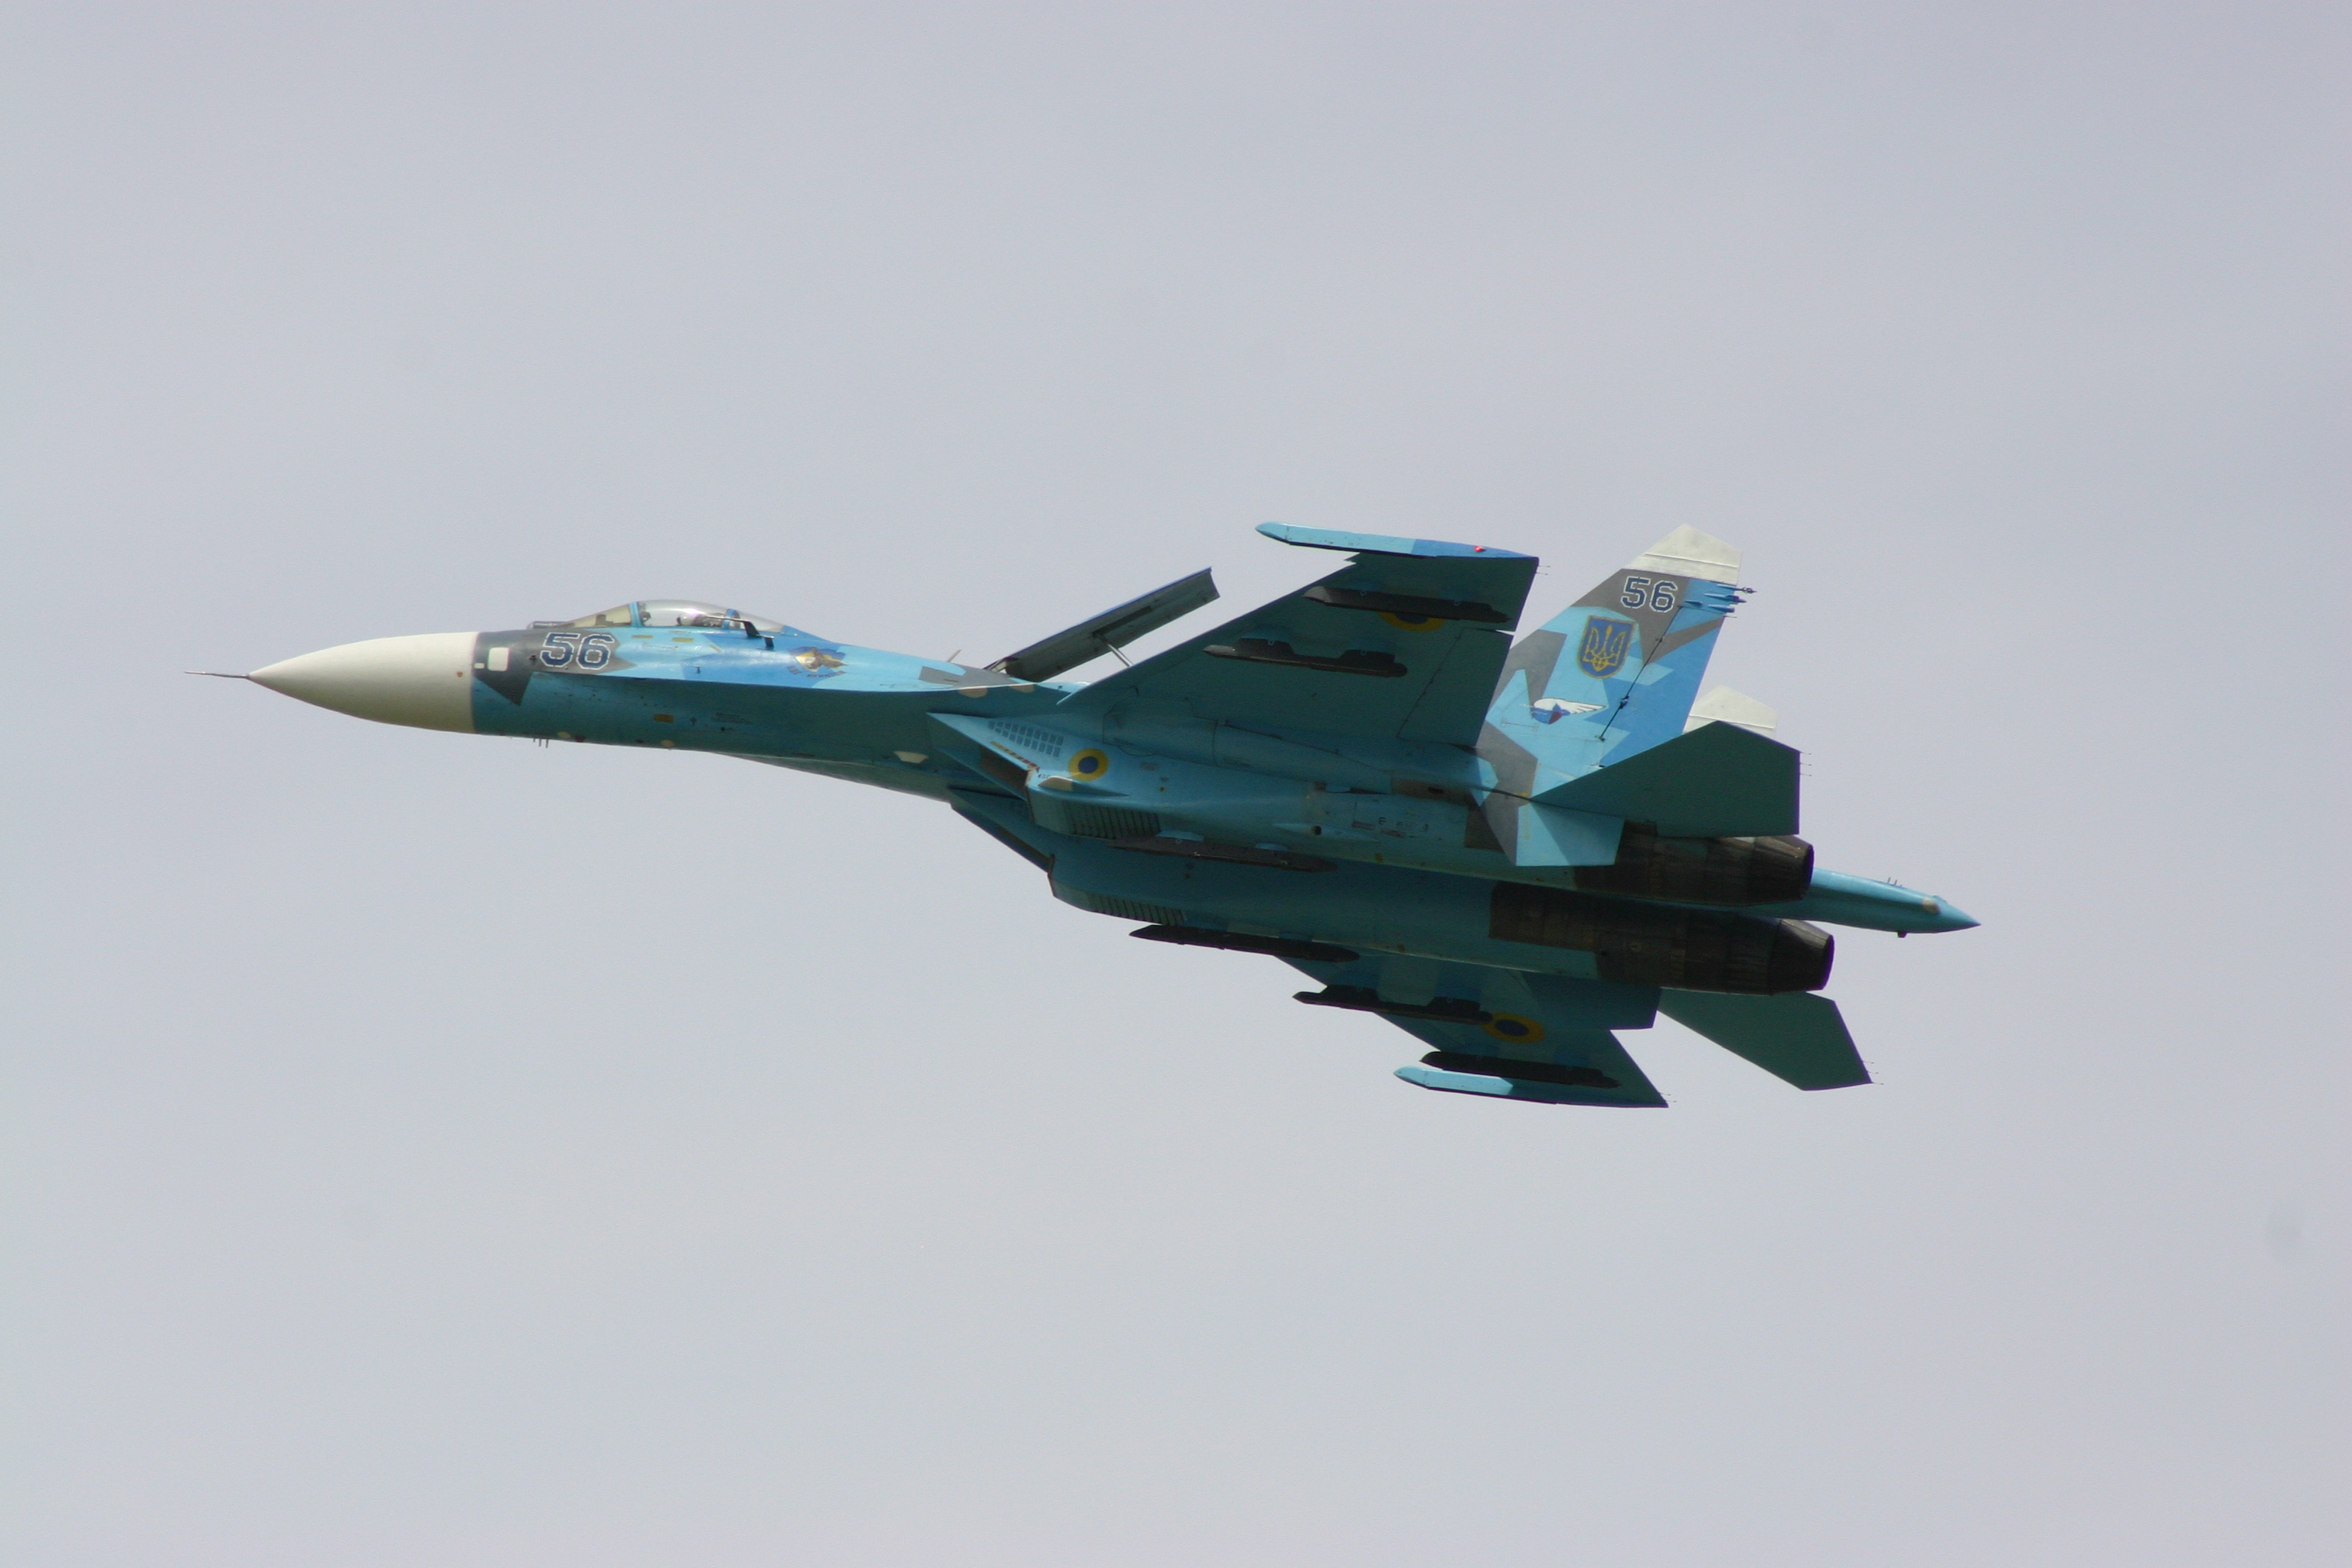 ХИТНО: Украјински ловац СУ-27 се налазио три до пет км иза обореног малезијског авиона!